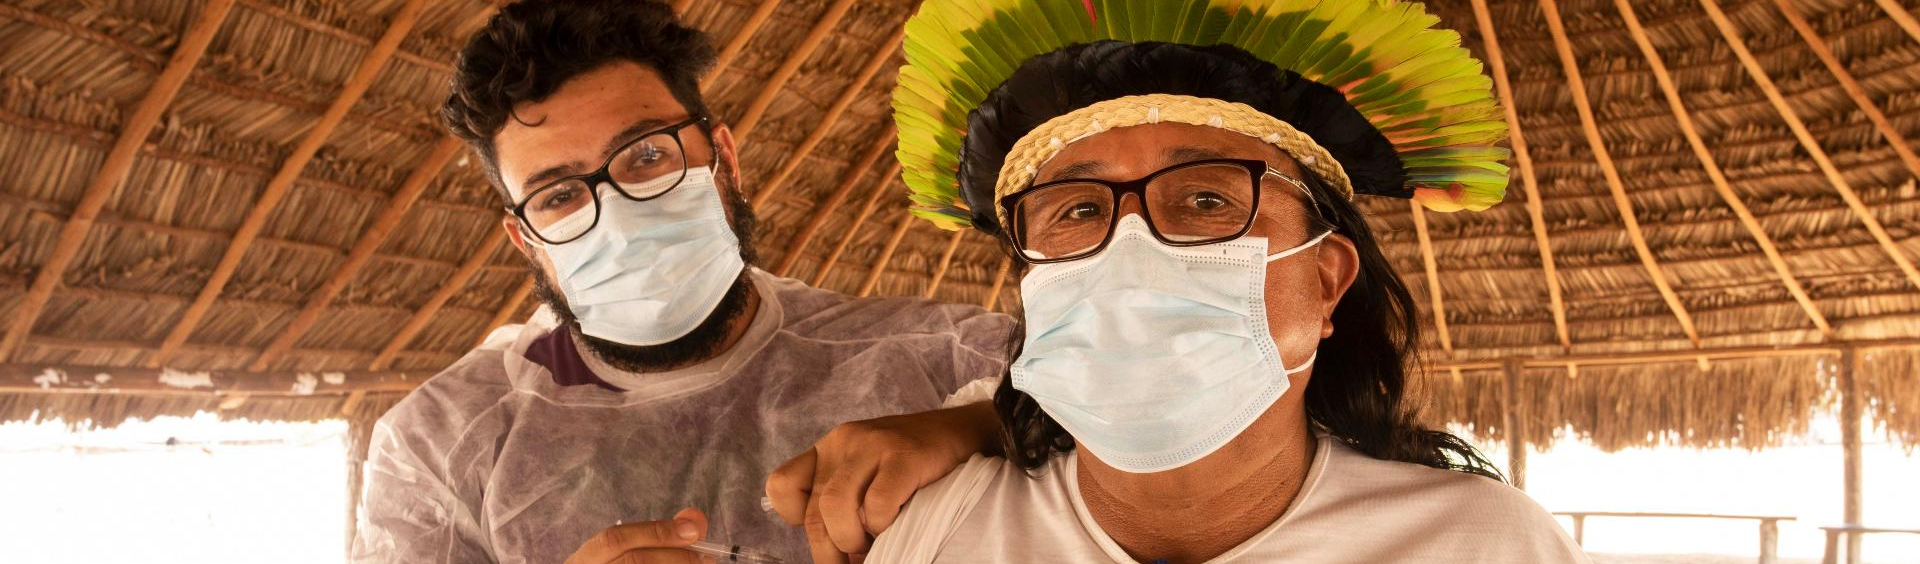 Um ano após início da vacinação, Bolsonaro só vacinou 46% da população que vive em Terras Indígenas